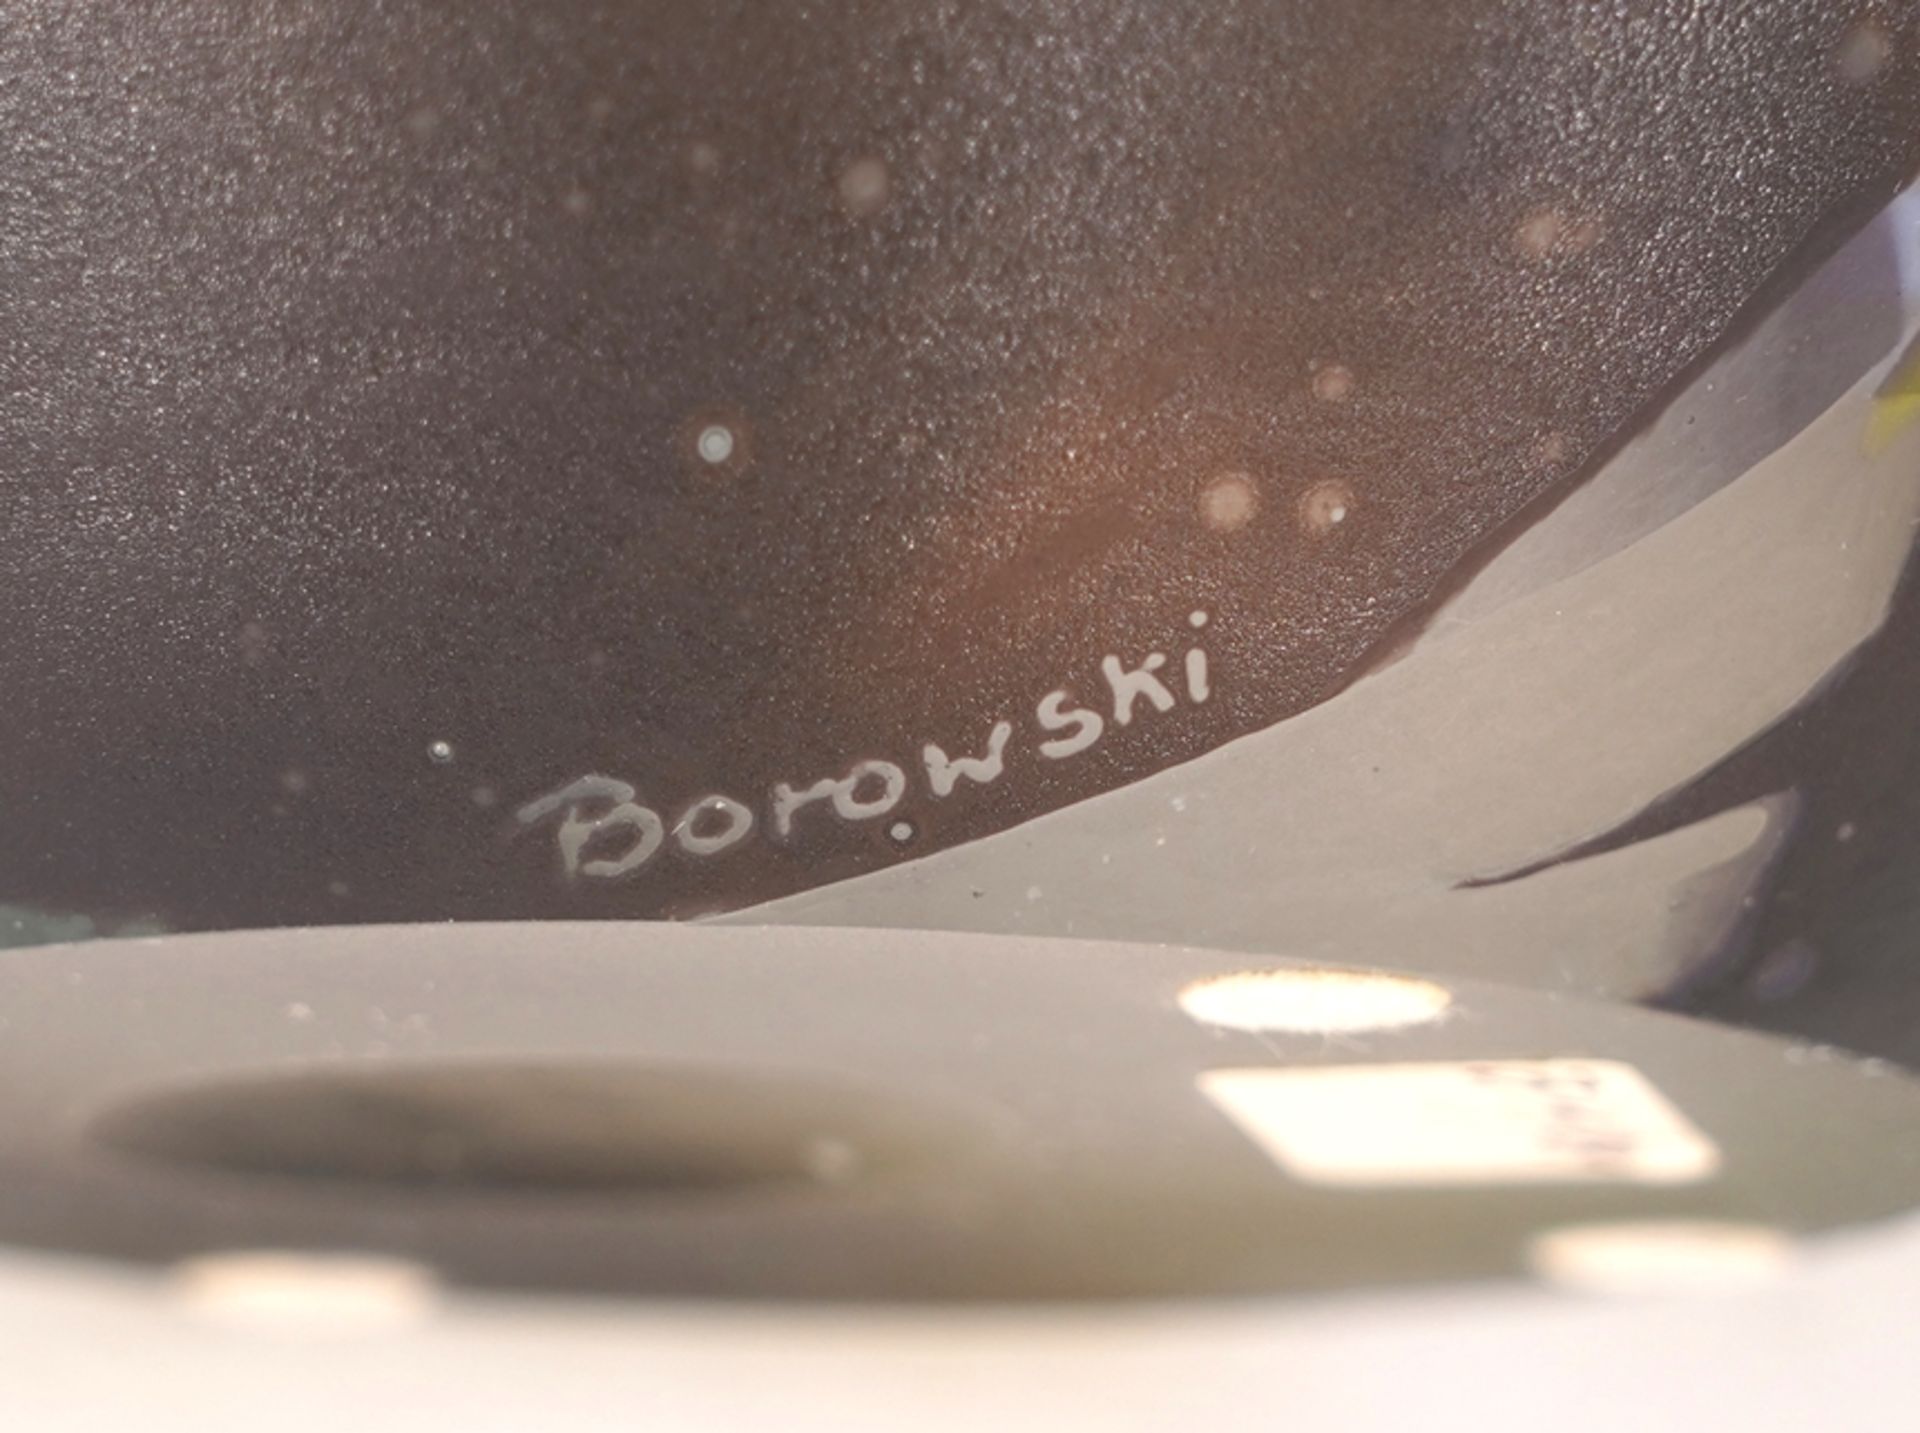 Borowski, Stanislaw - Bild 6 aus 6